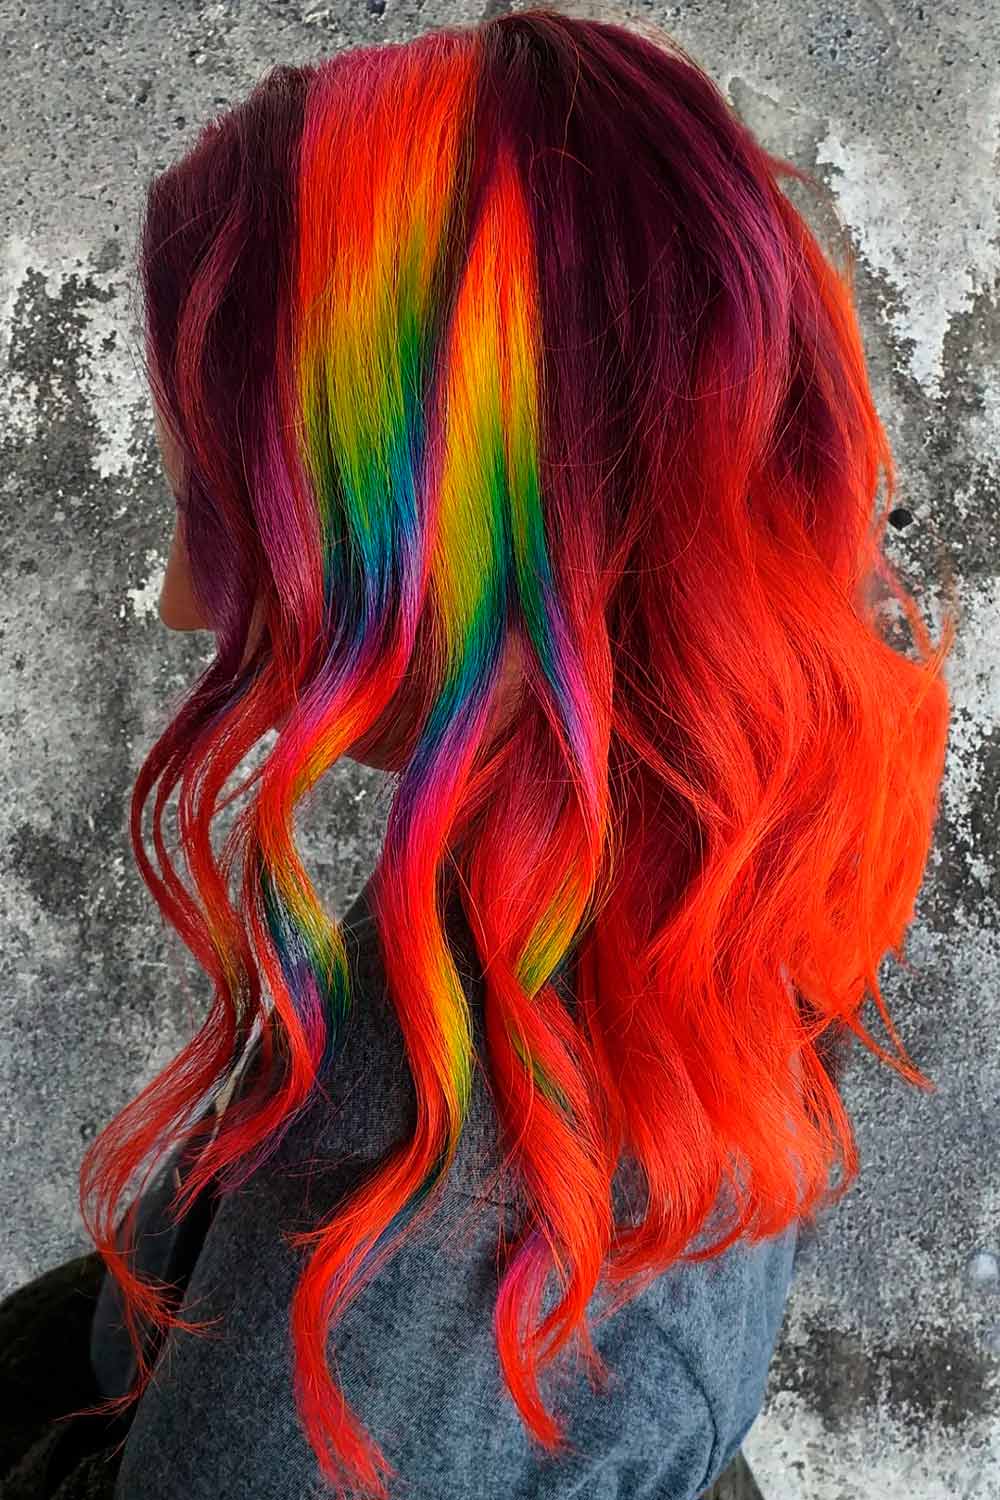 Rainbow Hair Stripes on Red Hair